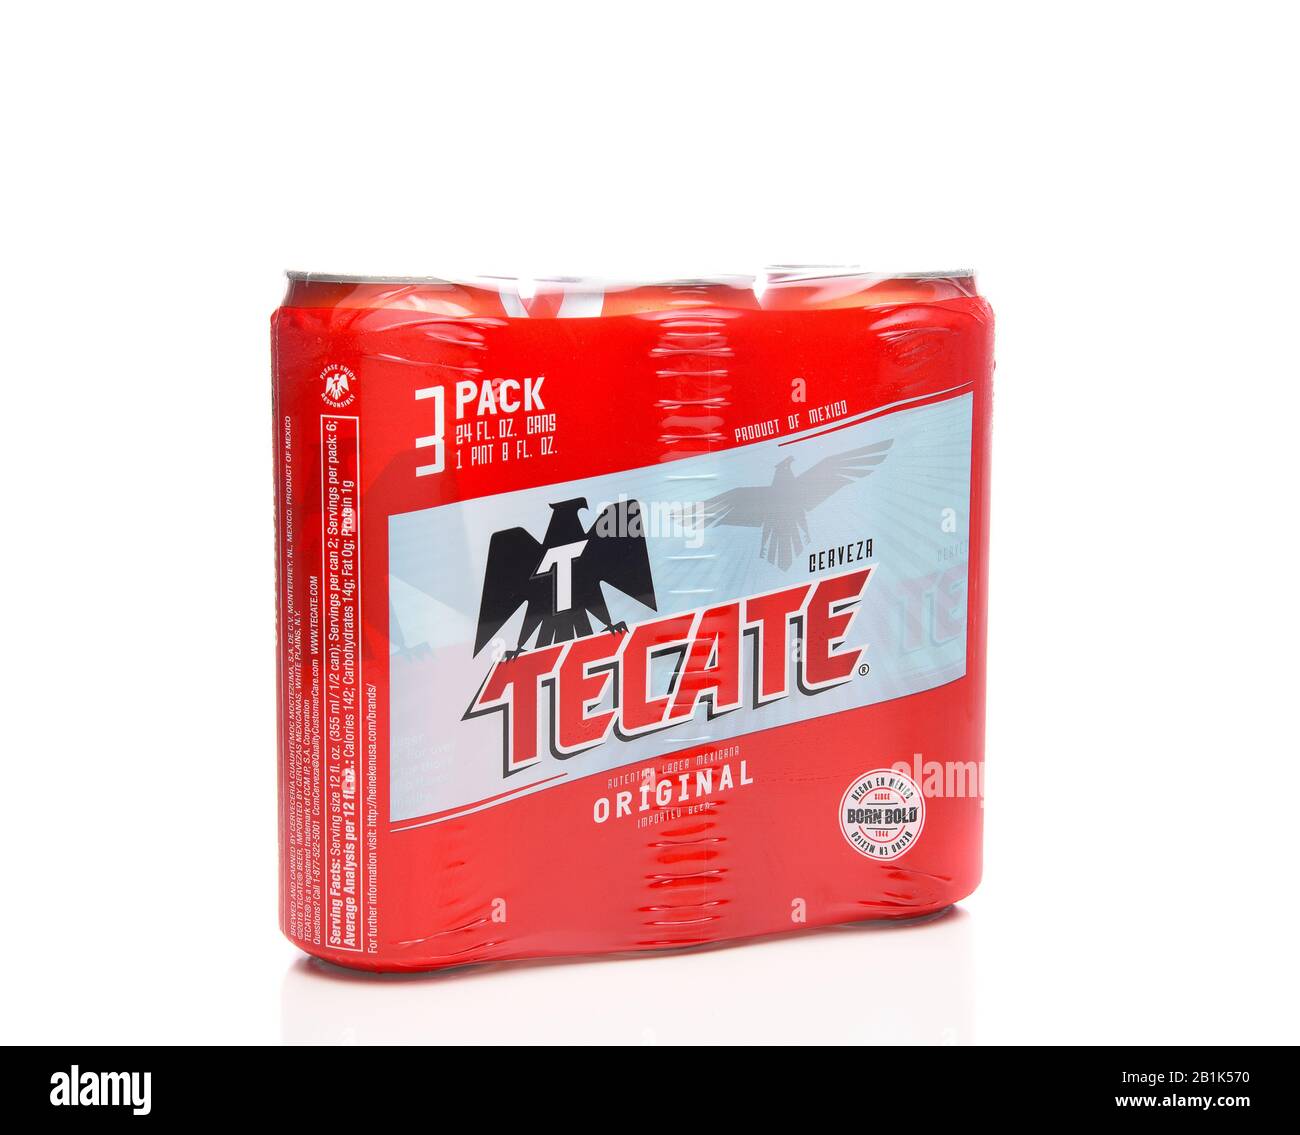 Irvine, KALIFORNIEN - 21. MÄRZ 2018: Eine 3-er Packung Tecate Original Cerveza 24-Unzen-Dosen. Die Cuauhtemoc Moctezuma Brewery ist eine große Brauerei mit Sitz in Monter Stockfoto